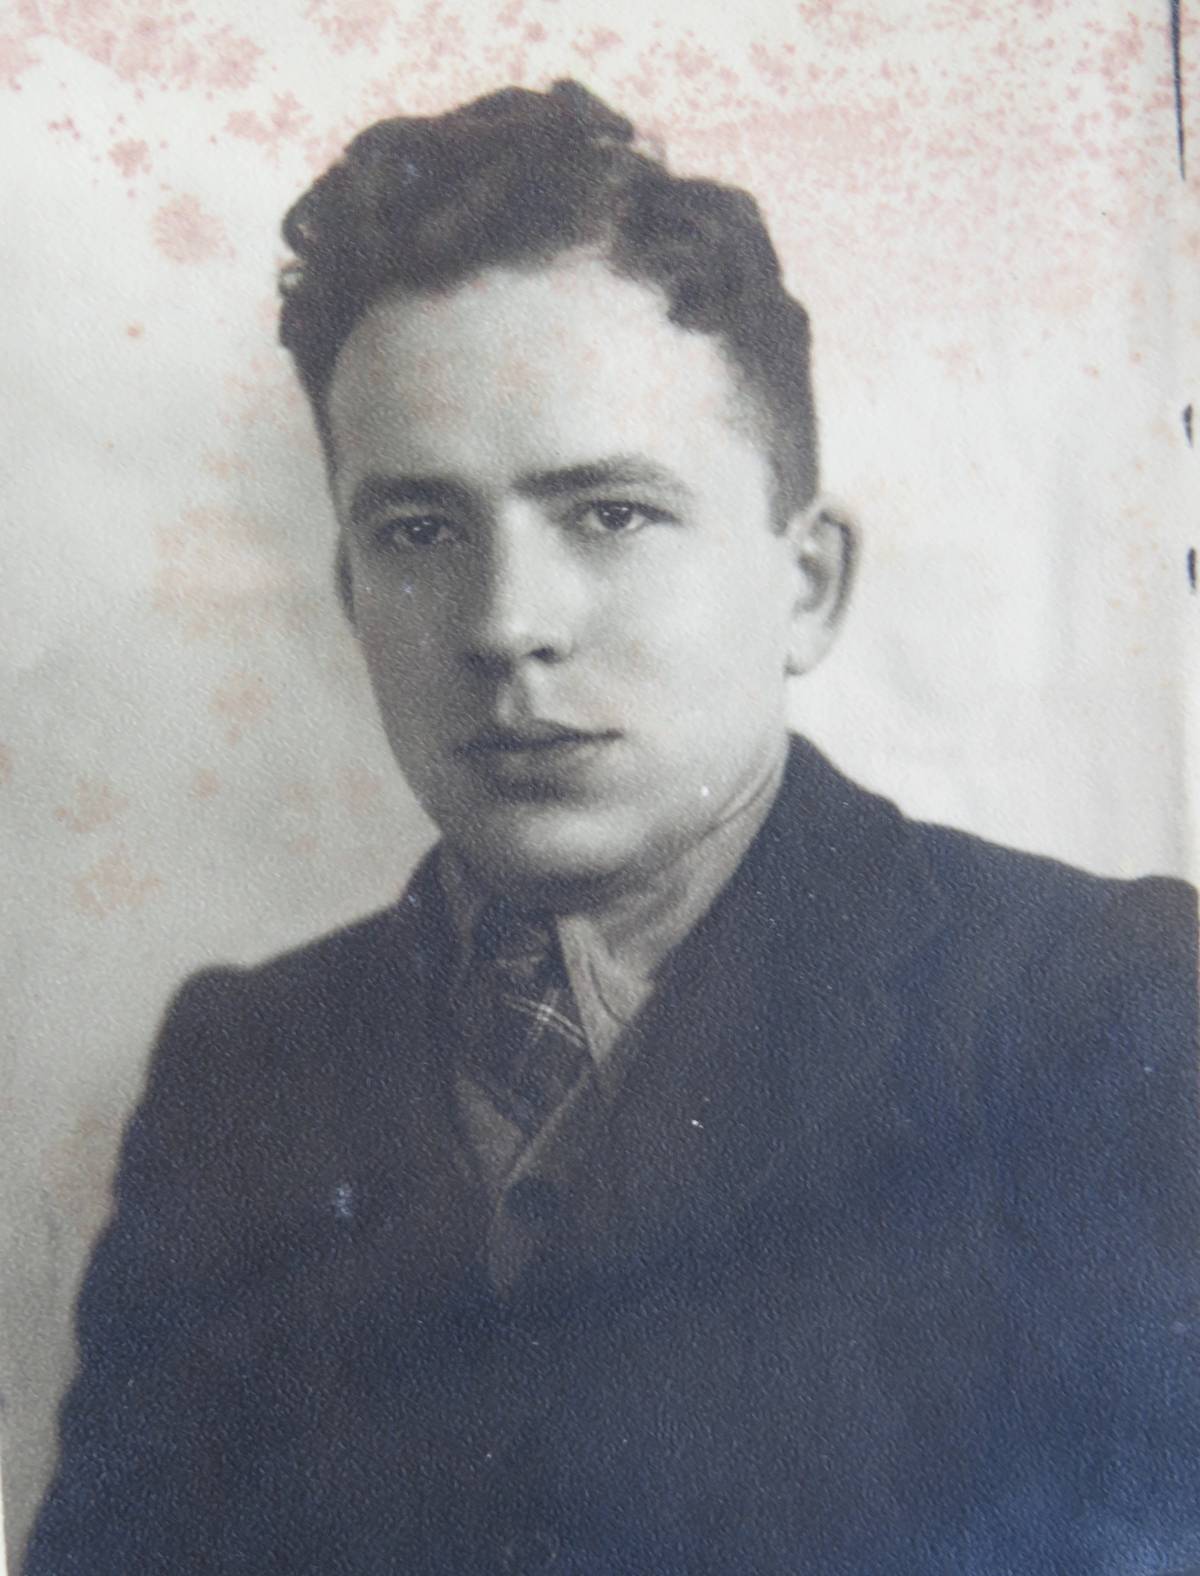 Yosef Makowski after the war